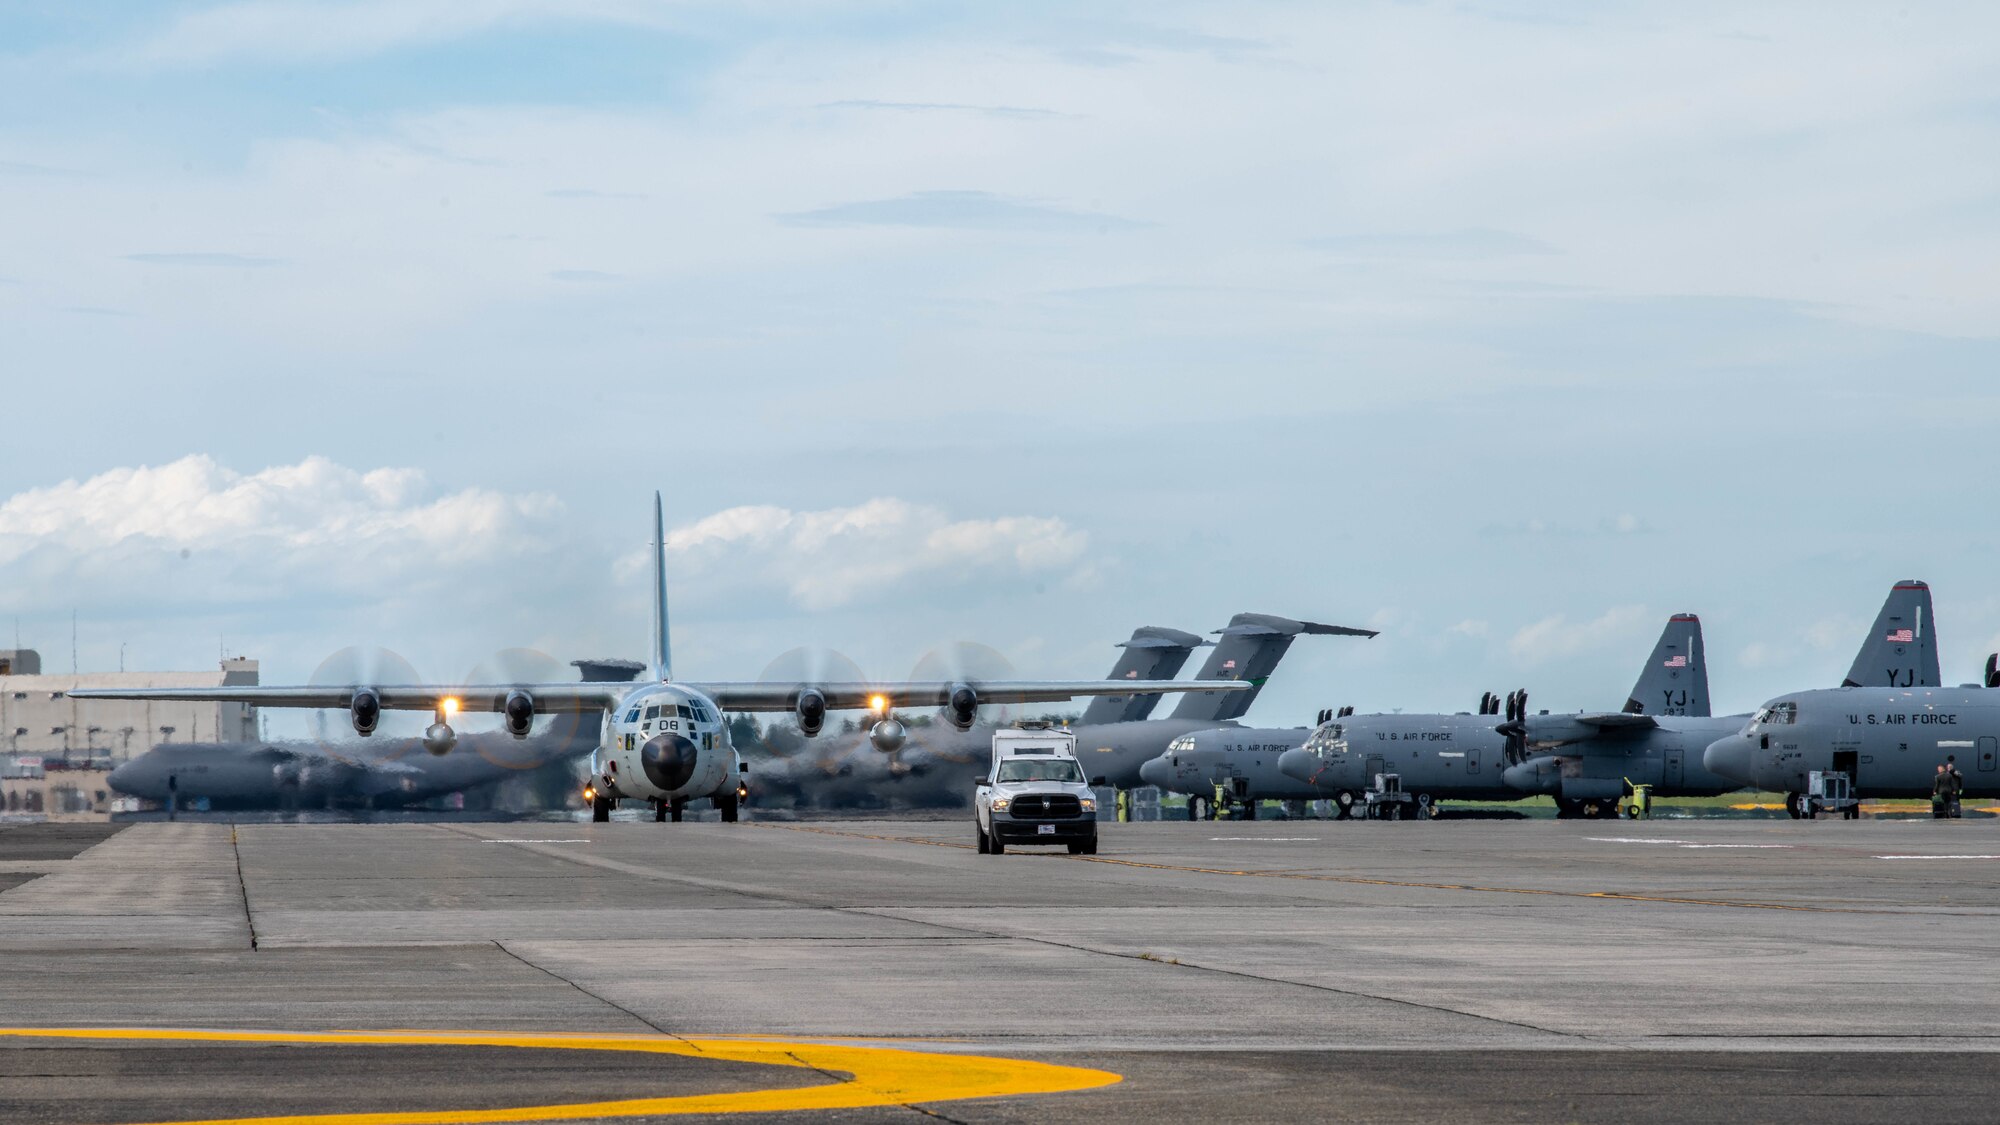 A Royal Thai Air Force C-130H Hercules taxis on a runway